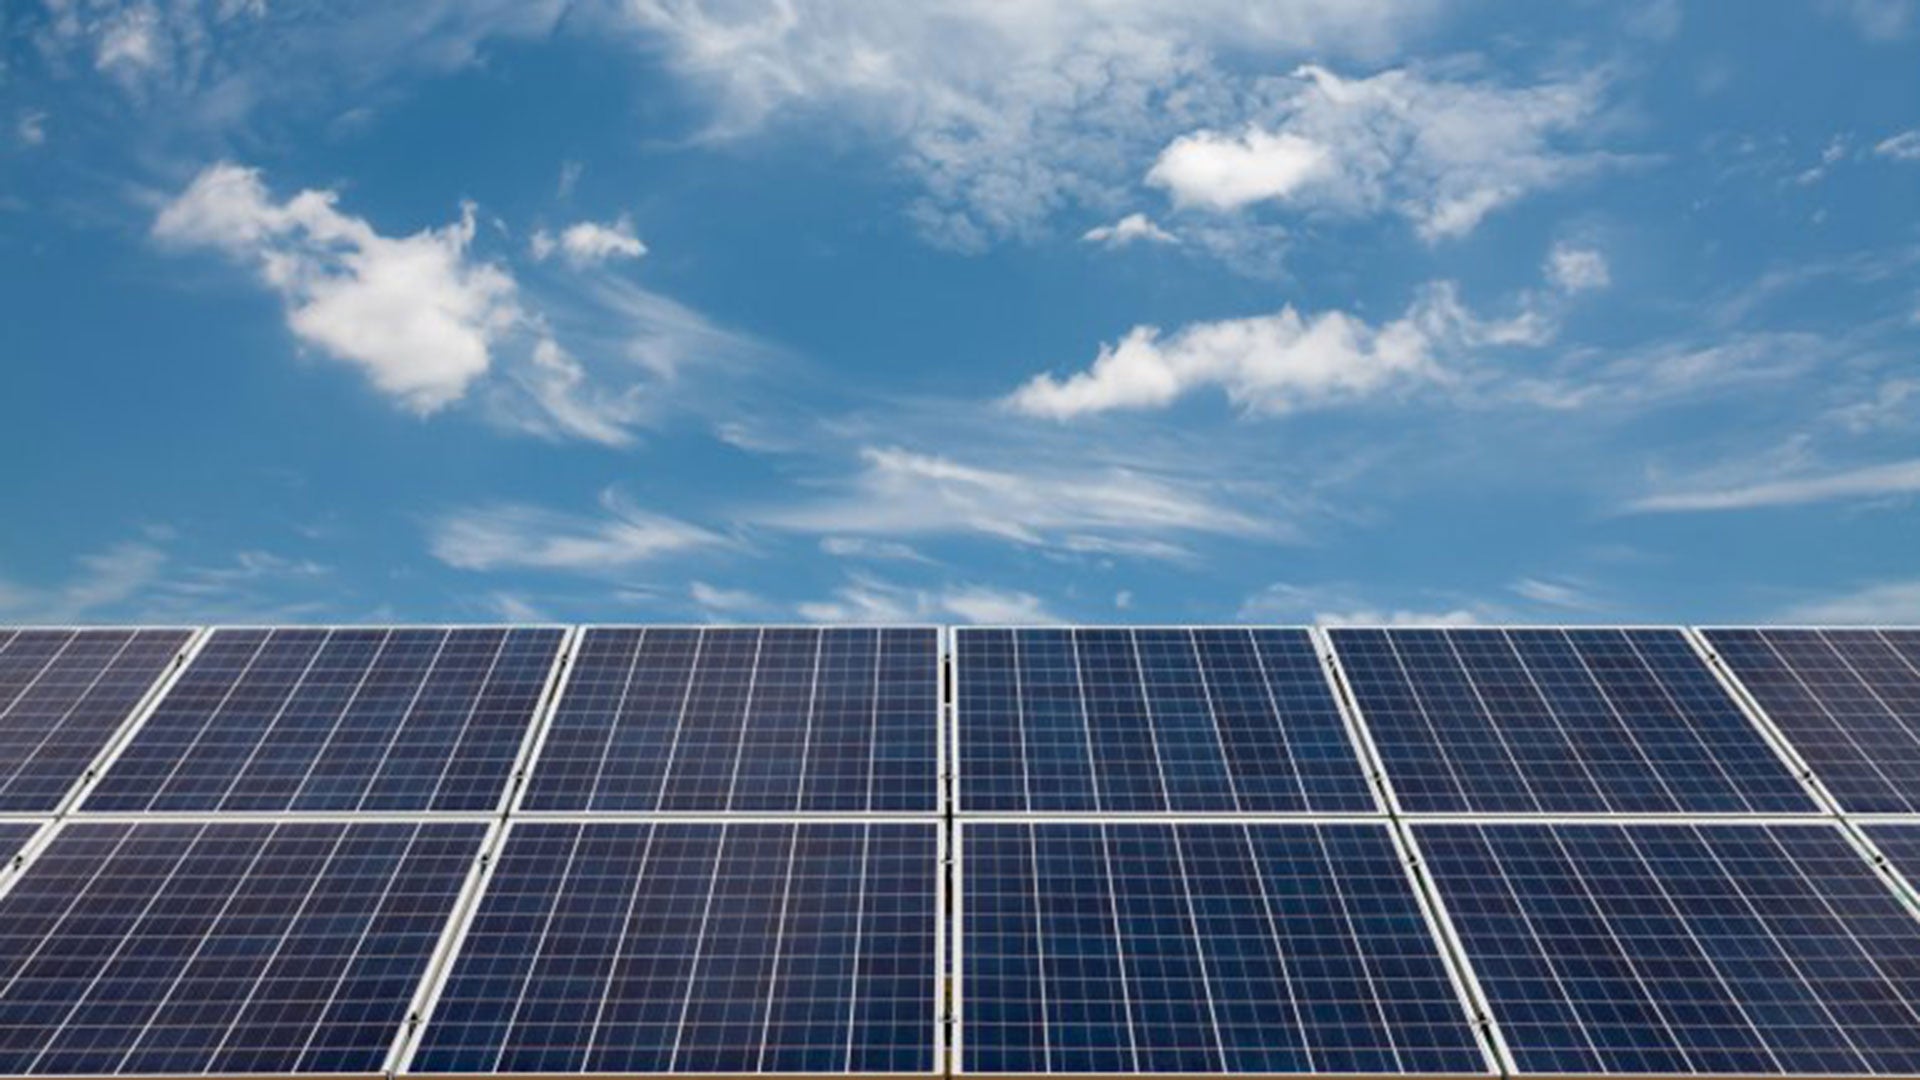 ventajas y desventajas de los paneles solares — idealista/news